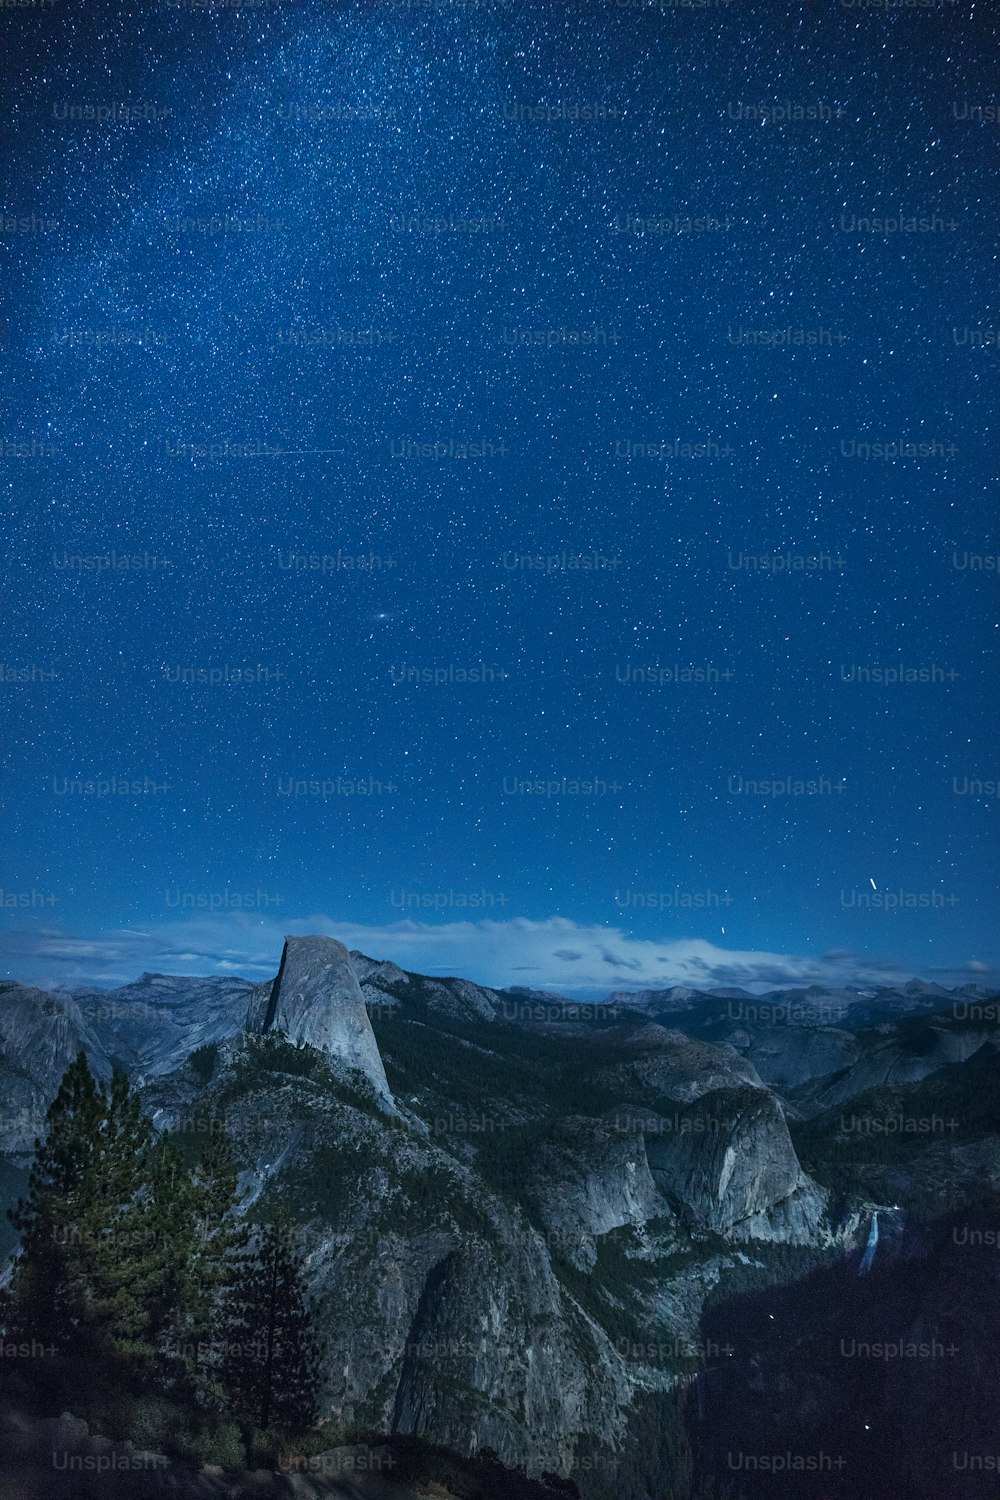 Der Nachthimmel über einer Bergkette mit Sternen am Himmel